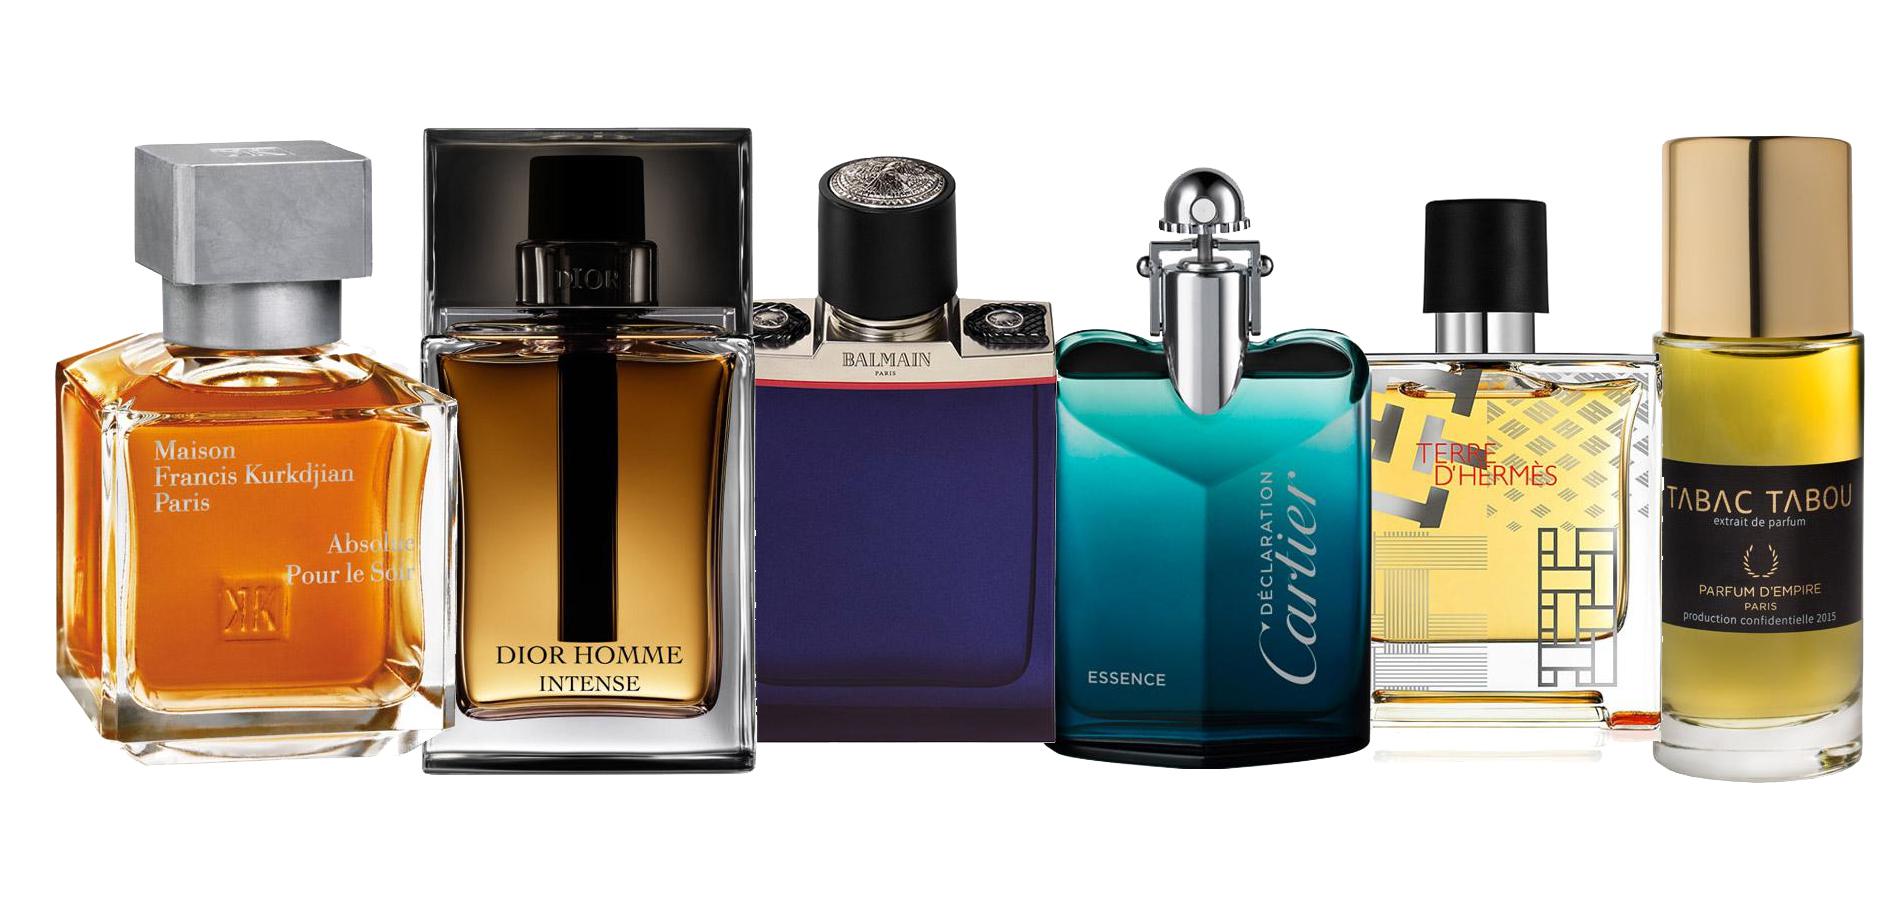 Quel est le parfum masculin le plus vendu au monde ?